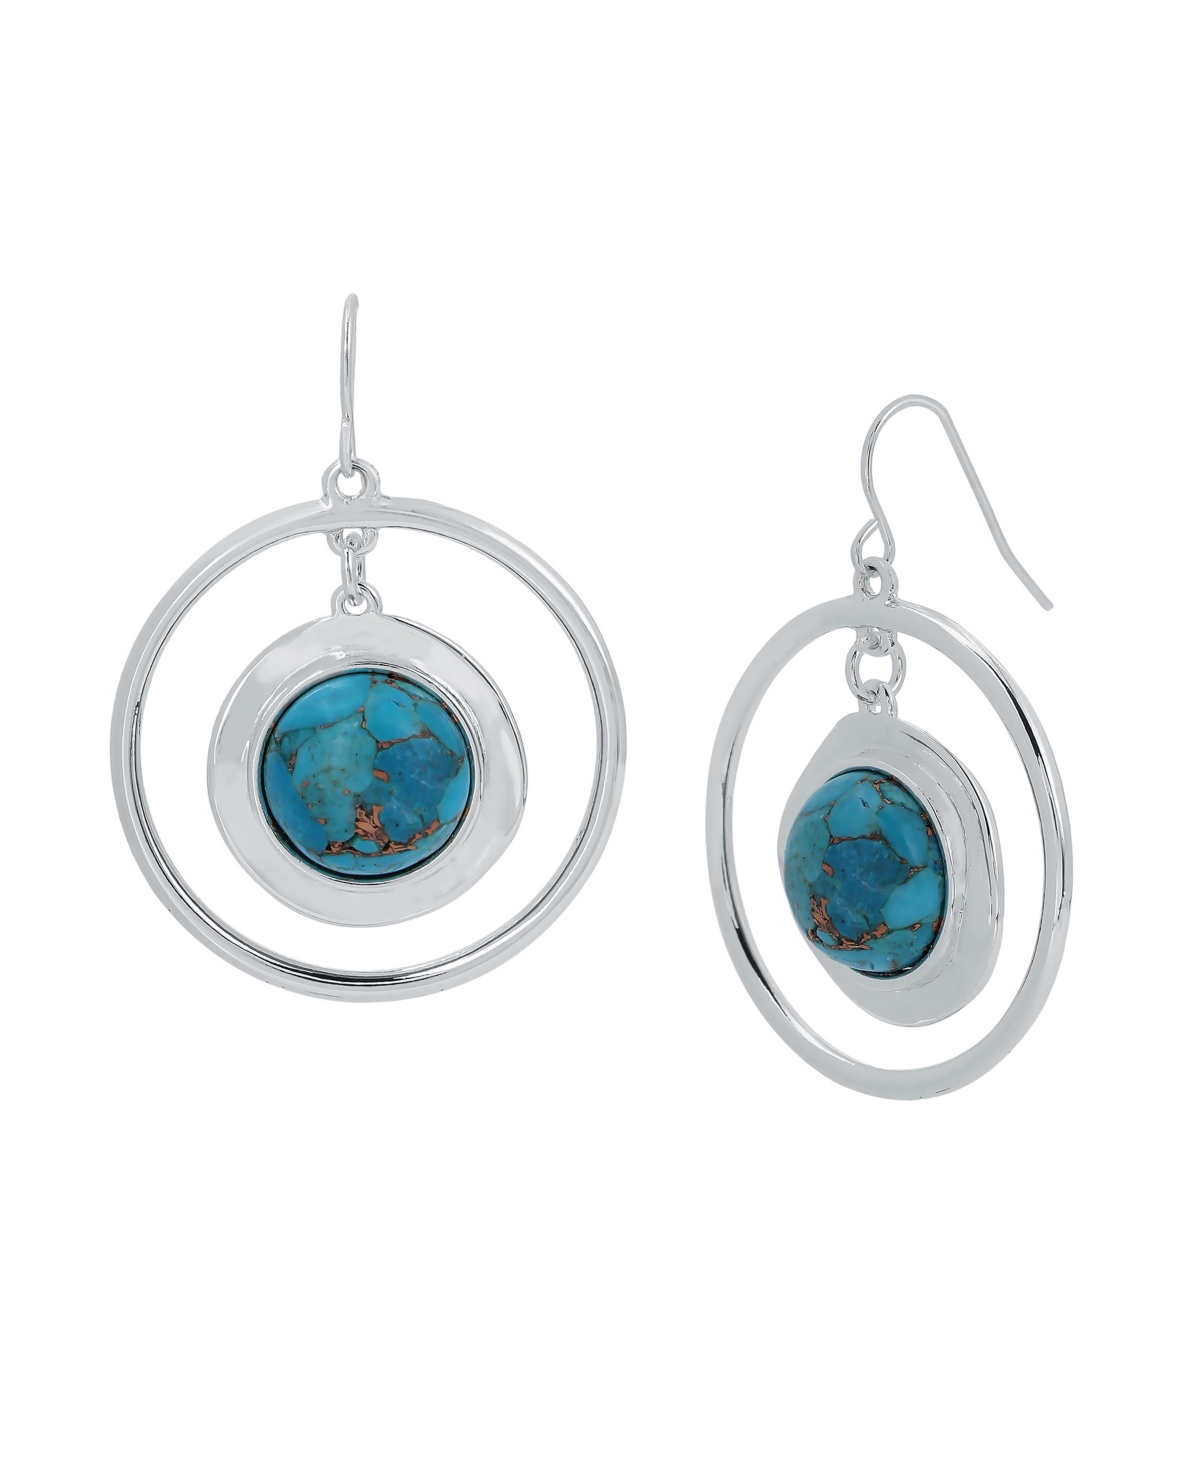 Robert Lee Morris Soho Cabochon Orbital Earrings In Turquoise